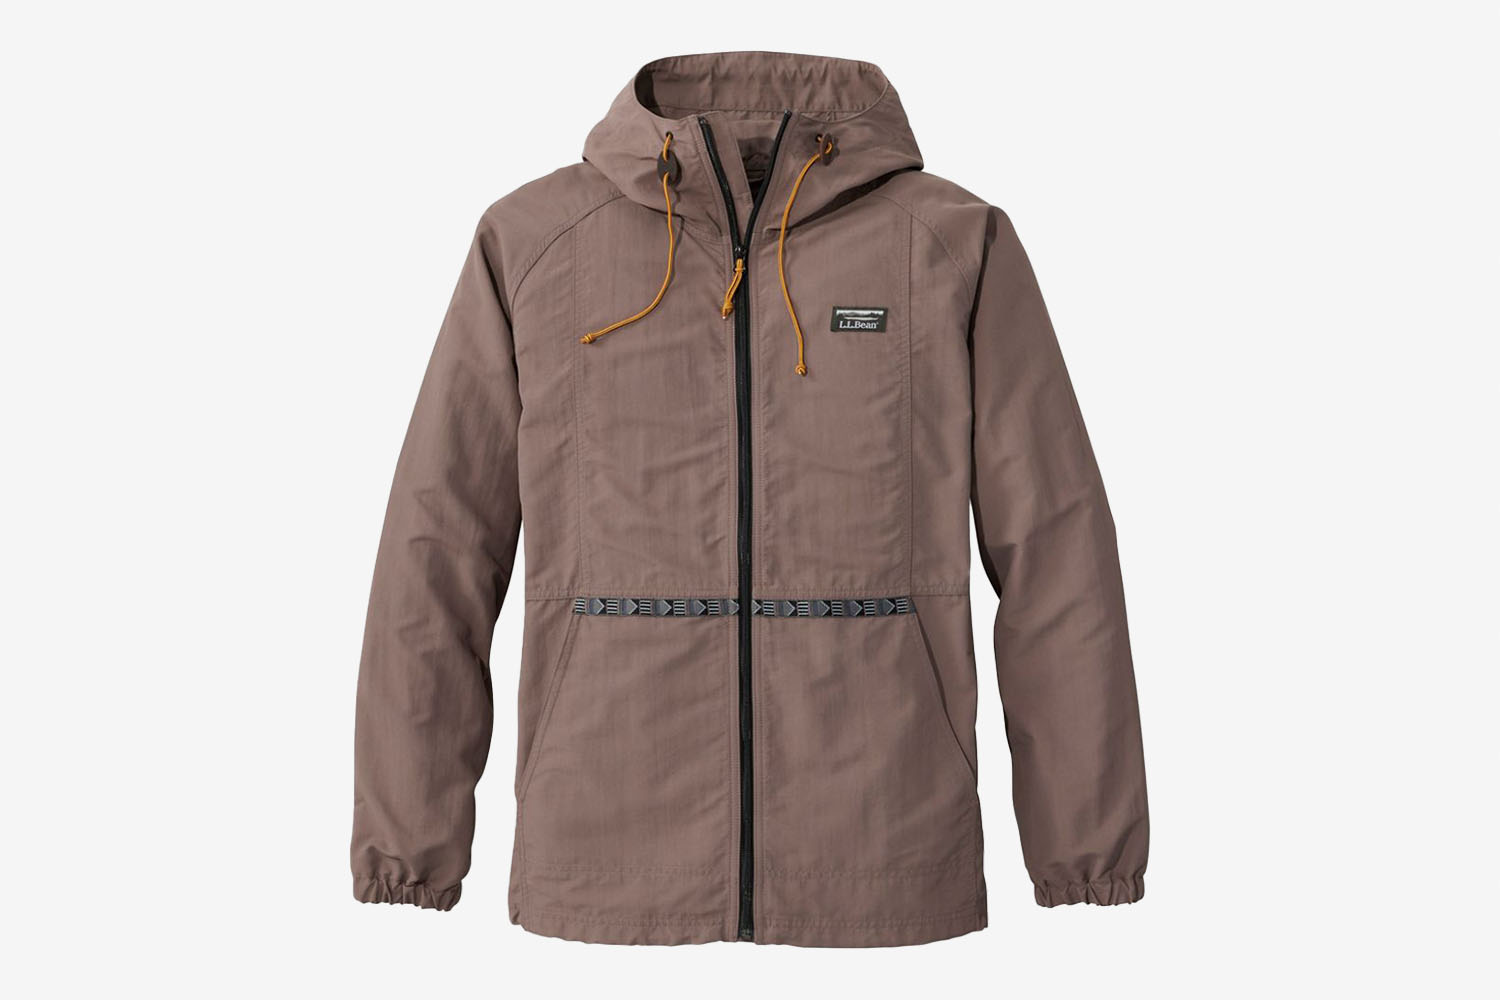 L.L. Bean Mountain Classic Full-Zip Jacket